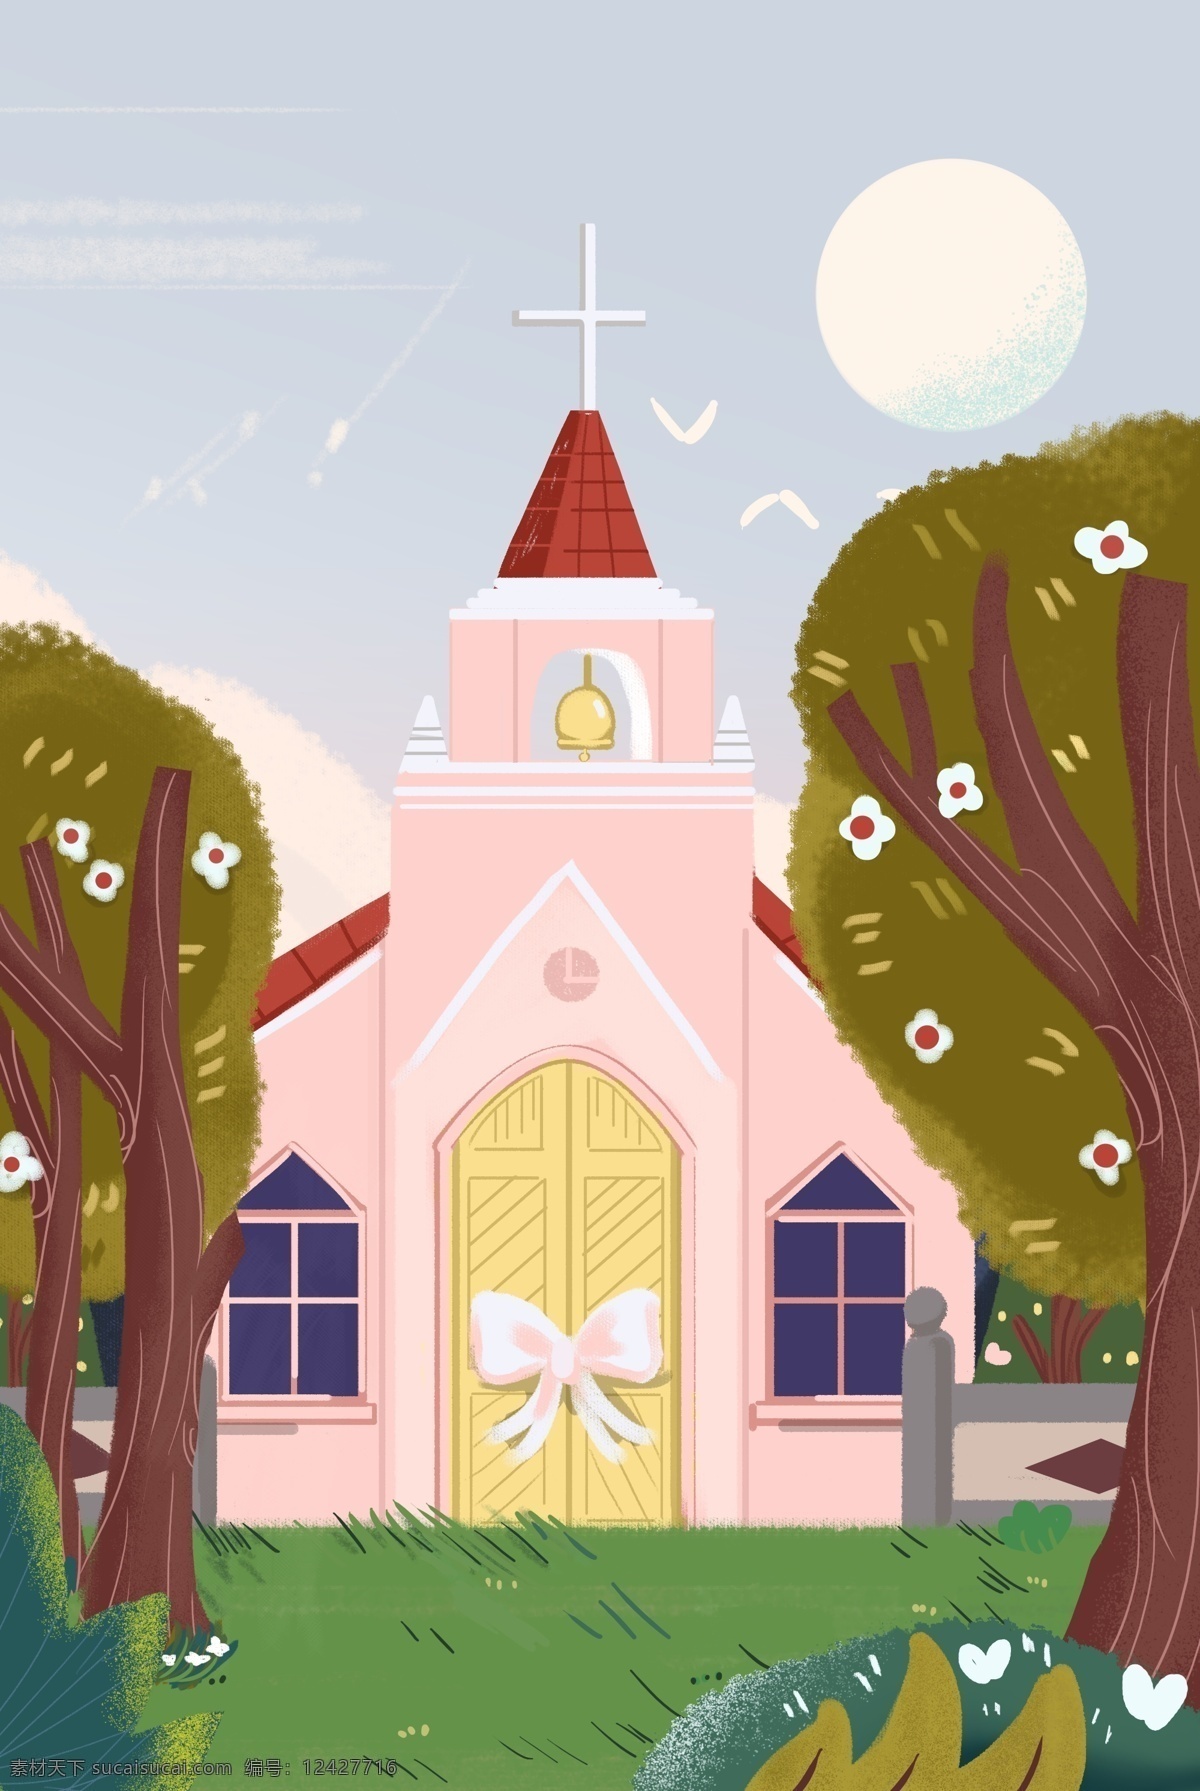 卡通 粉红色 房子 免 抠 图 教堂 结婚的圣地 卡通图案 卡通插画 绿色植物 大树 草地 免抠图